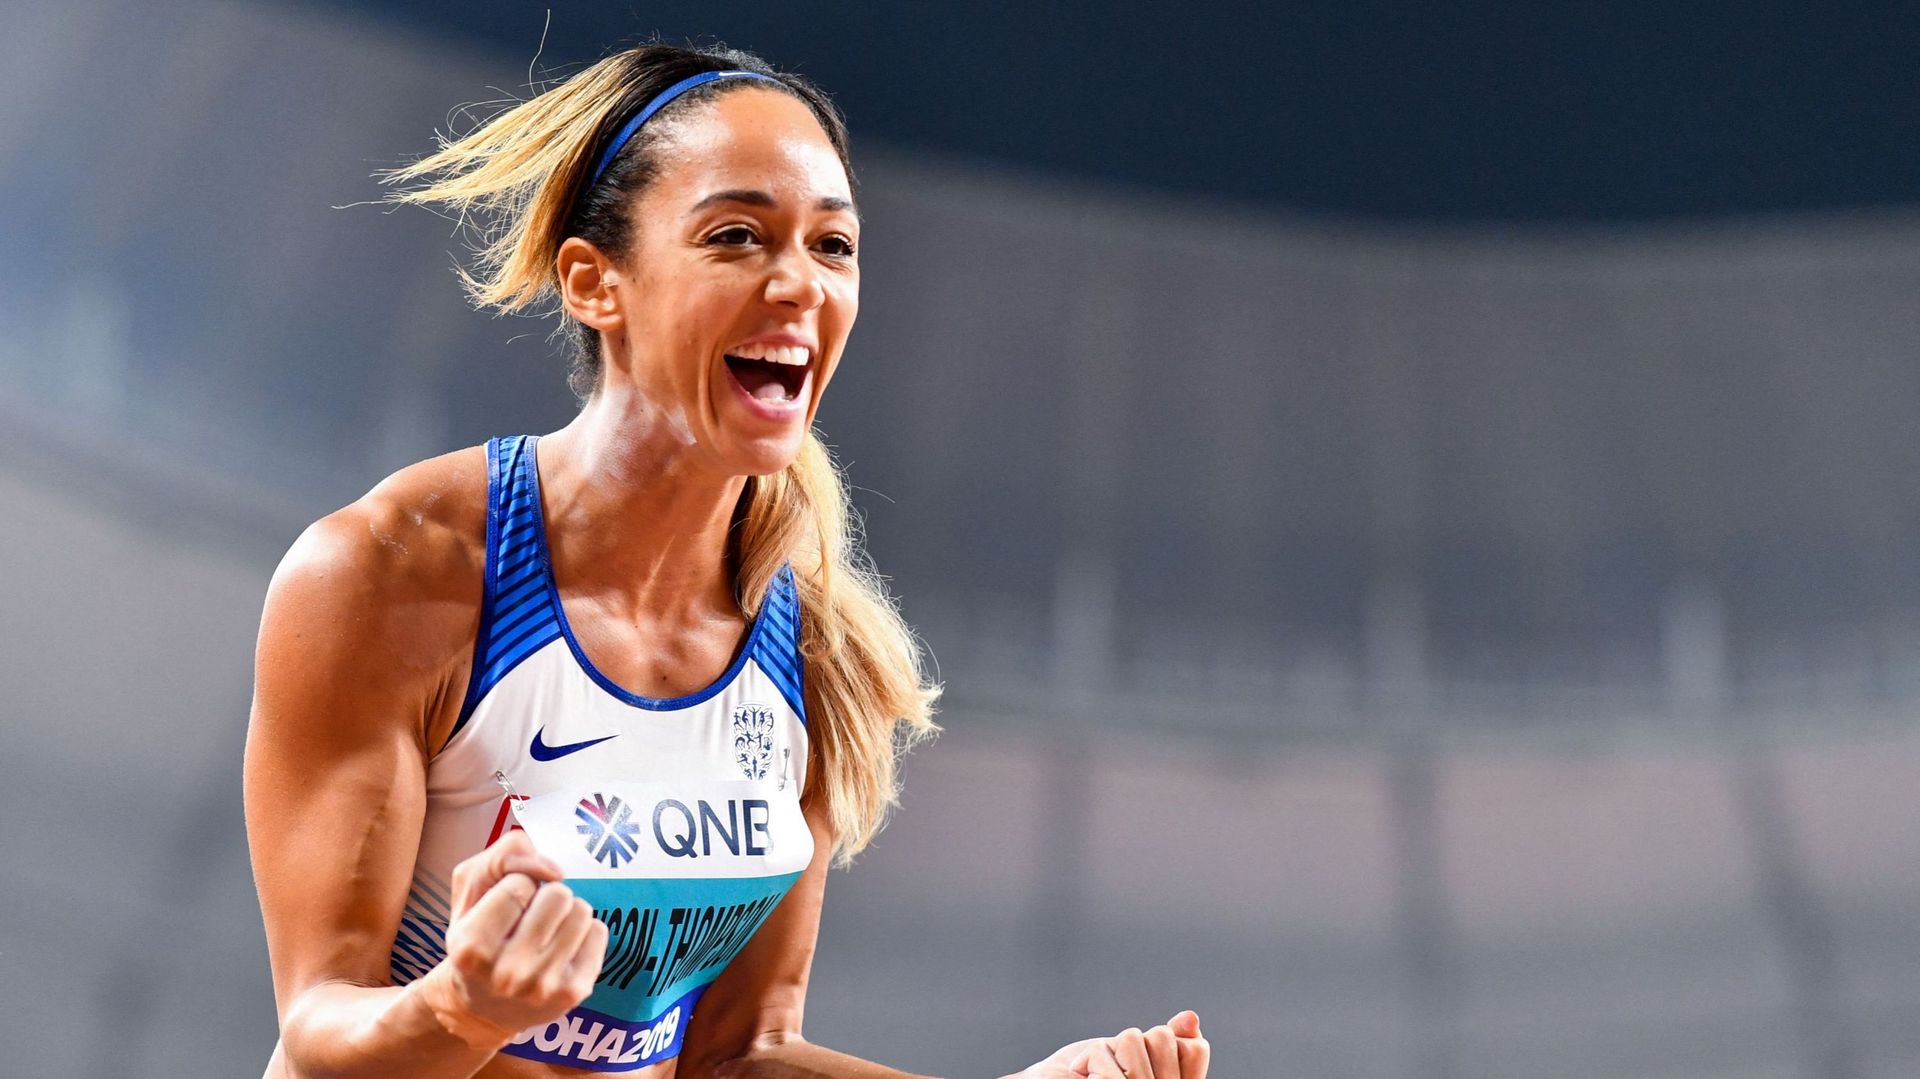 Quel est le niveau actuel de Katarina Johnson-Thompson, la championne du monde de Doha ?